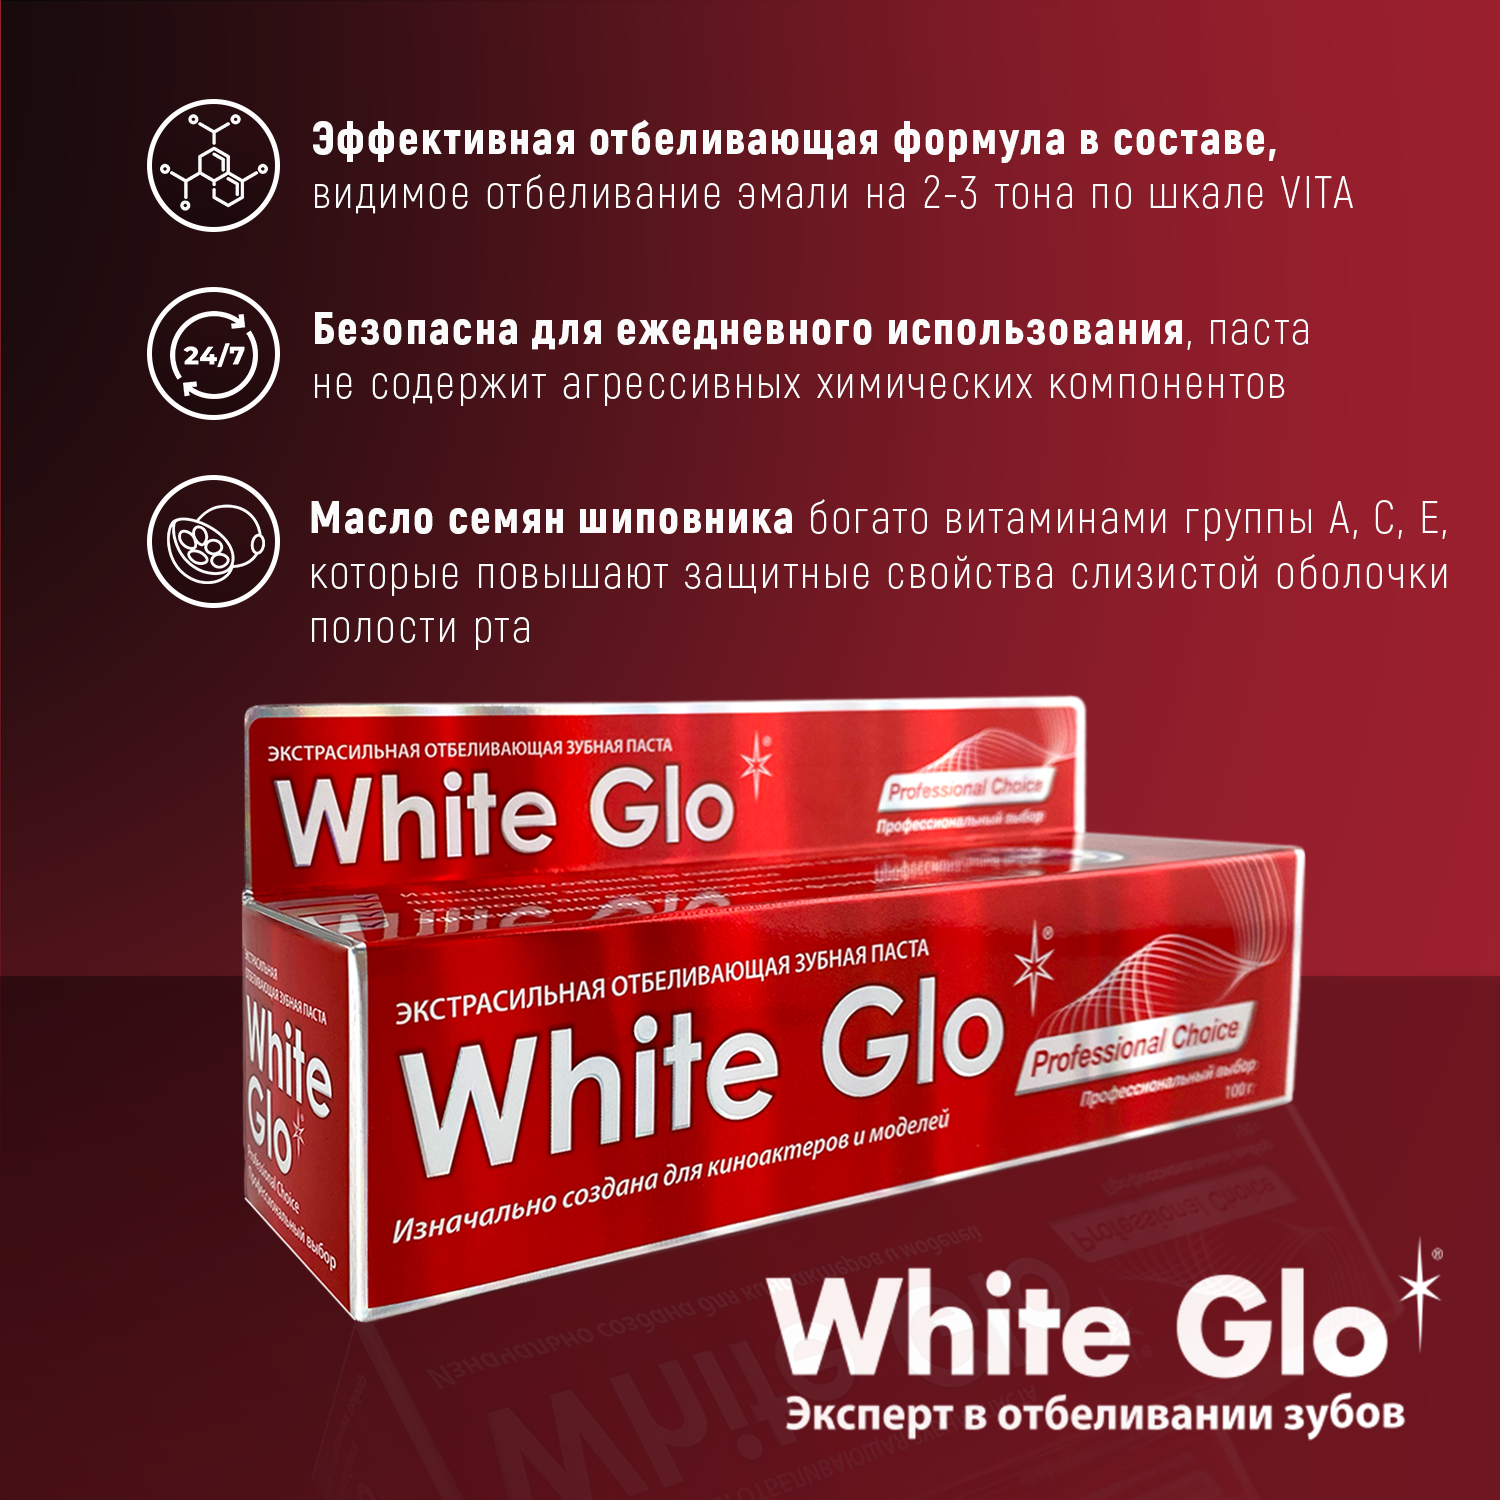 Зубная паста WHITE GLO отбеливающая профессиональный выбор - фото 2